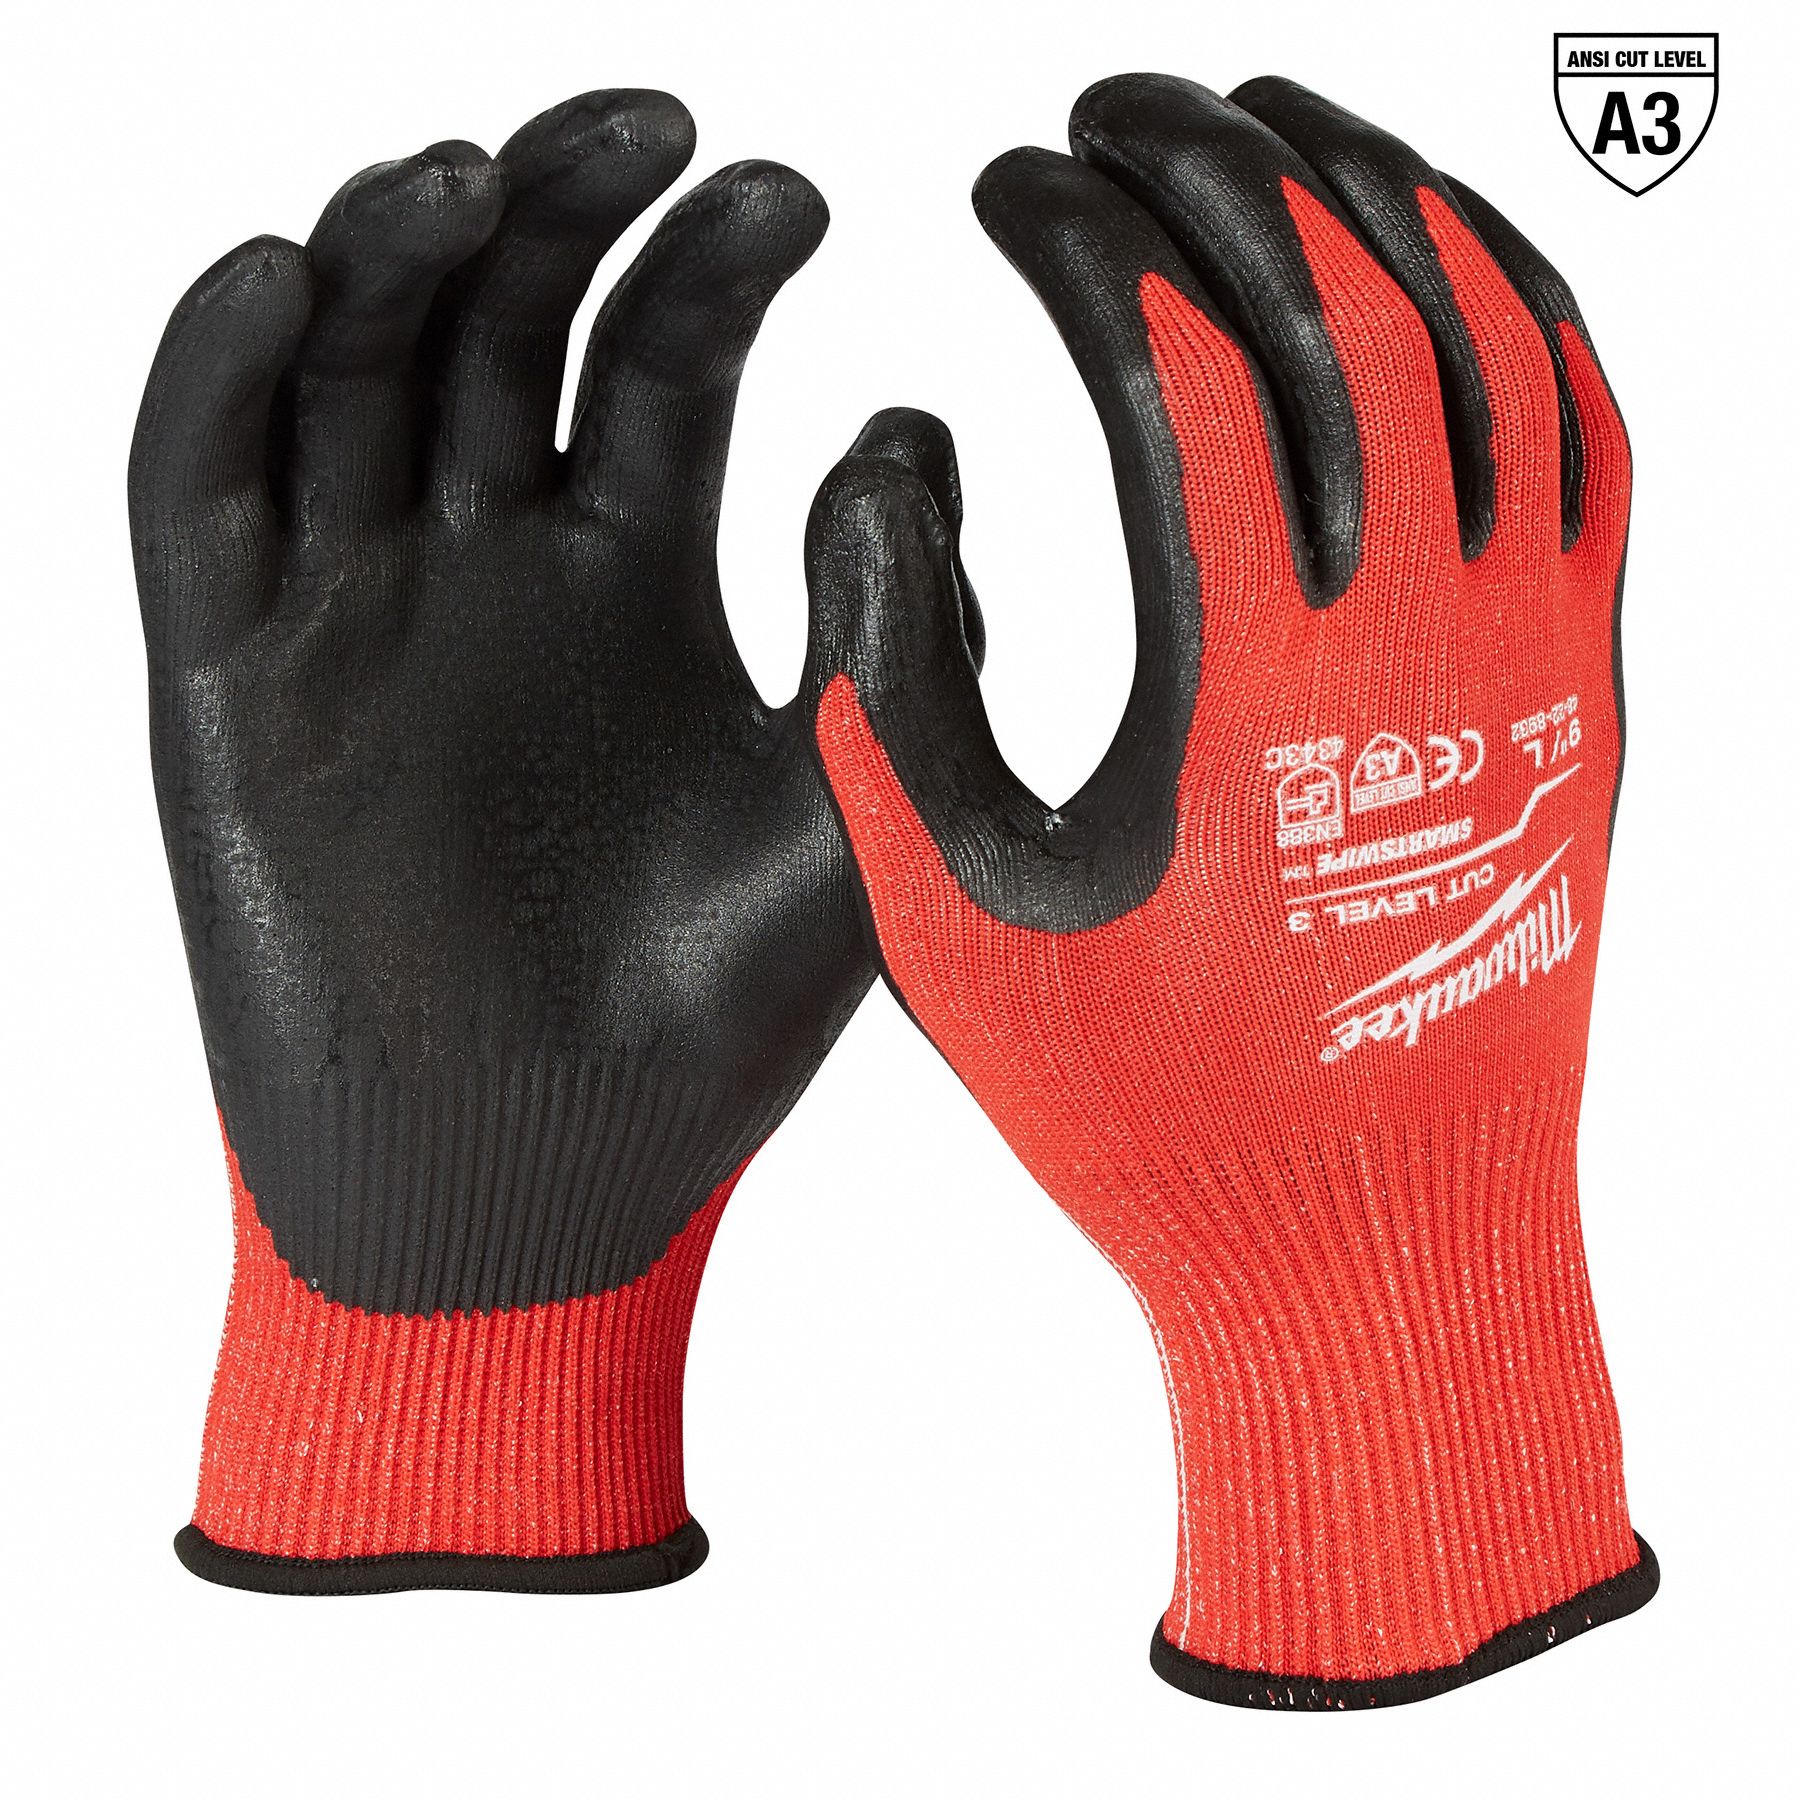 PIP, L ( 9 ), ANSI Cut Level A9, Cut-Resistant Glove - 55TK87